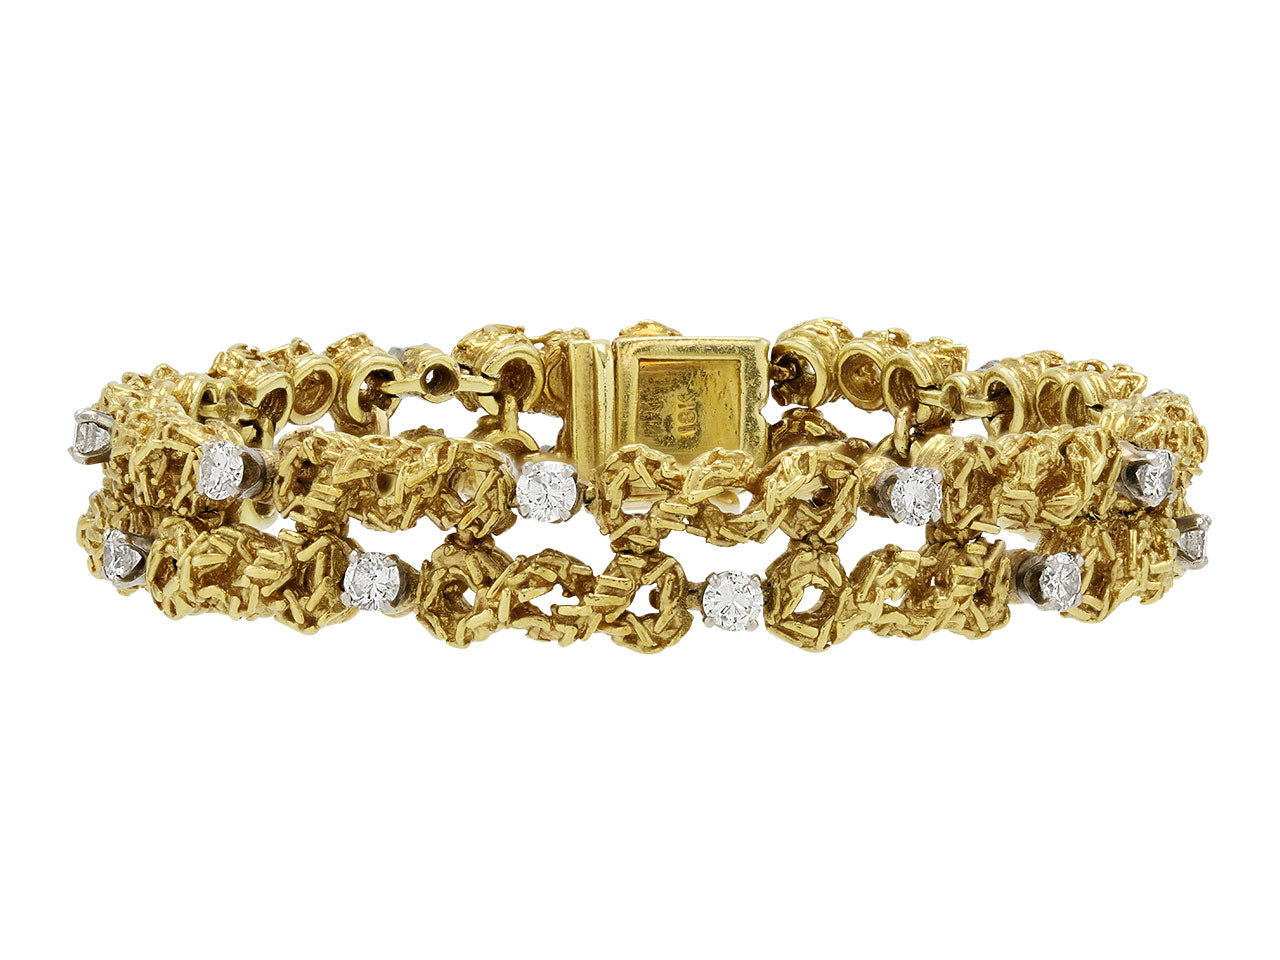 Gold and Diamond Bracelet, in 18K